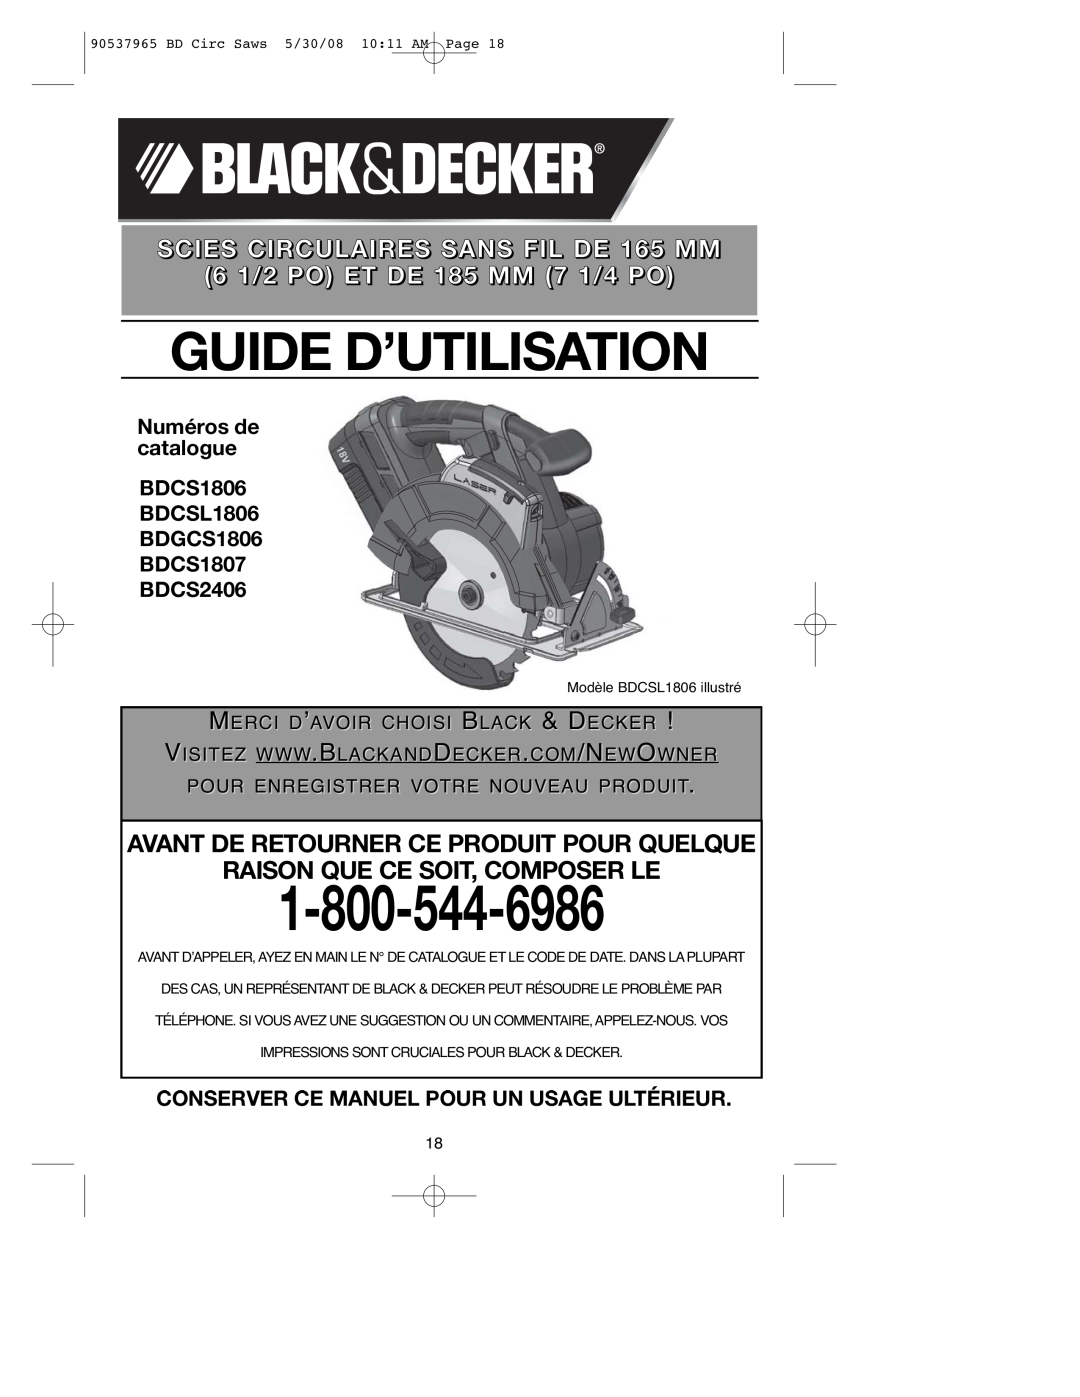 Black & Decker 90537965, BDCS1806 Guide D’Utilisation, SCIES CIRCULAIRES SANS FIL DE 165 MM 6 1/2 PO ET DE 185 MM 7 1/4 PO 